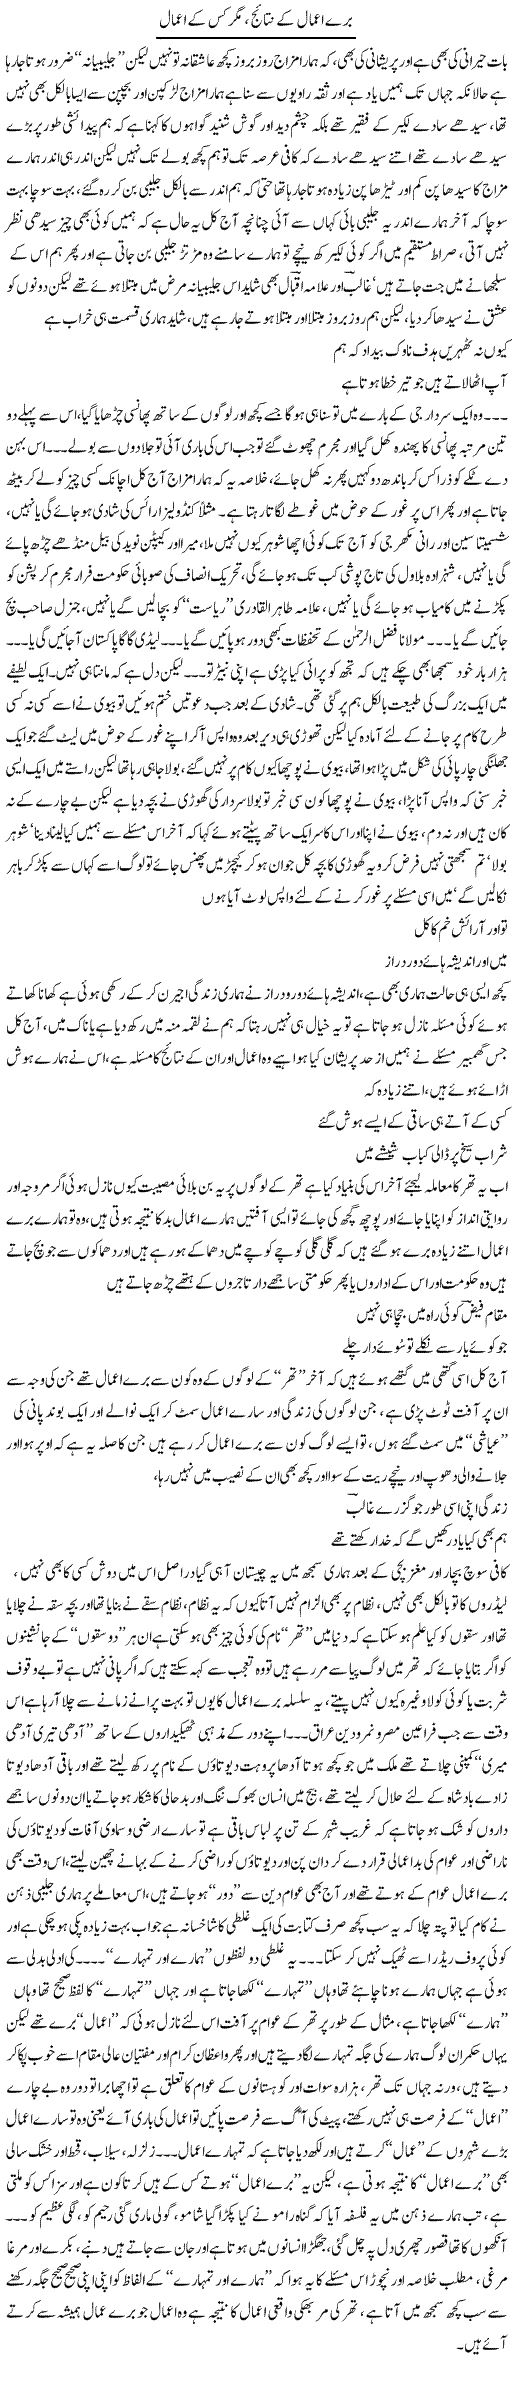 Bure Amaal K Nataij Mager Kis K | Saad Ullah Jan Barq | Daily Urdu Columns